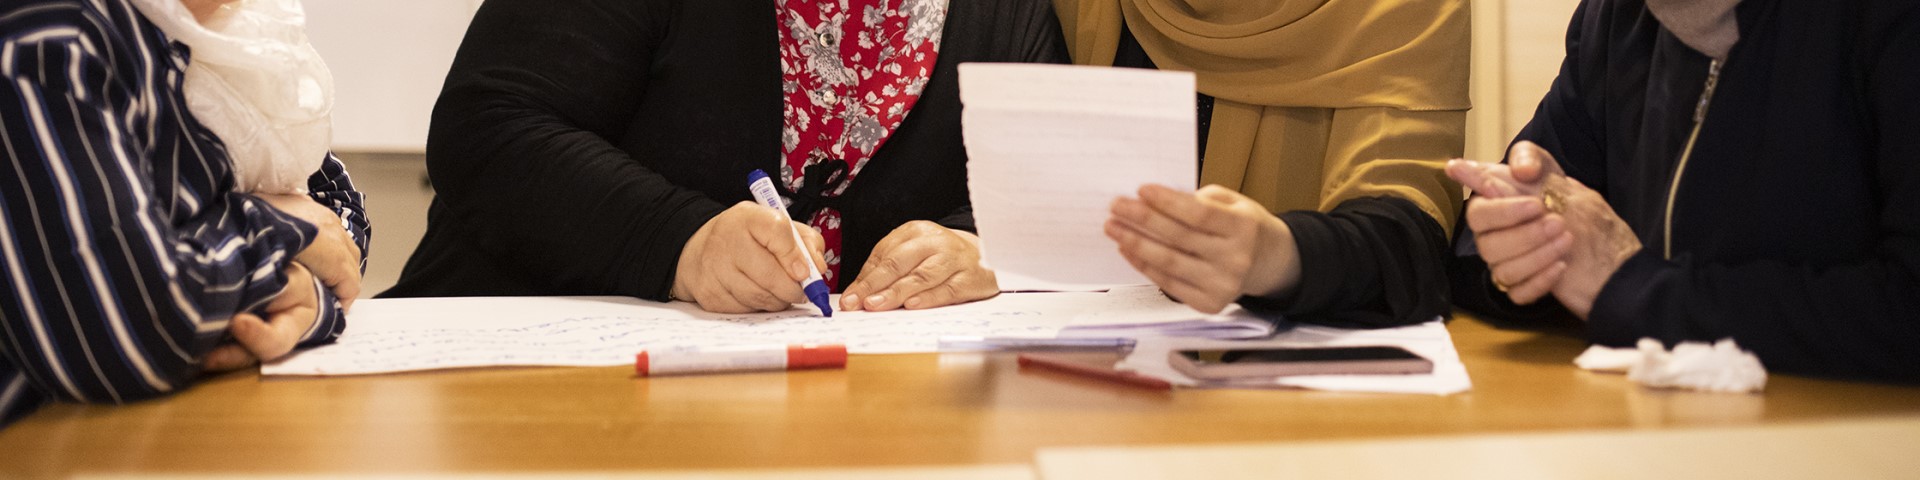 Eine Gruppe von Frauen, die solidarisch zusammenarbeitet und Papiere beschriftet. Copyright: GIZ / Ali Saltan